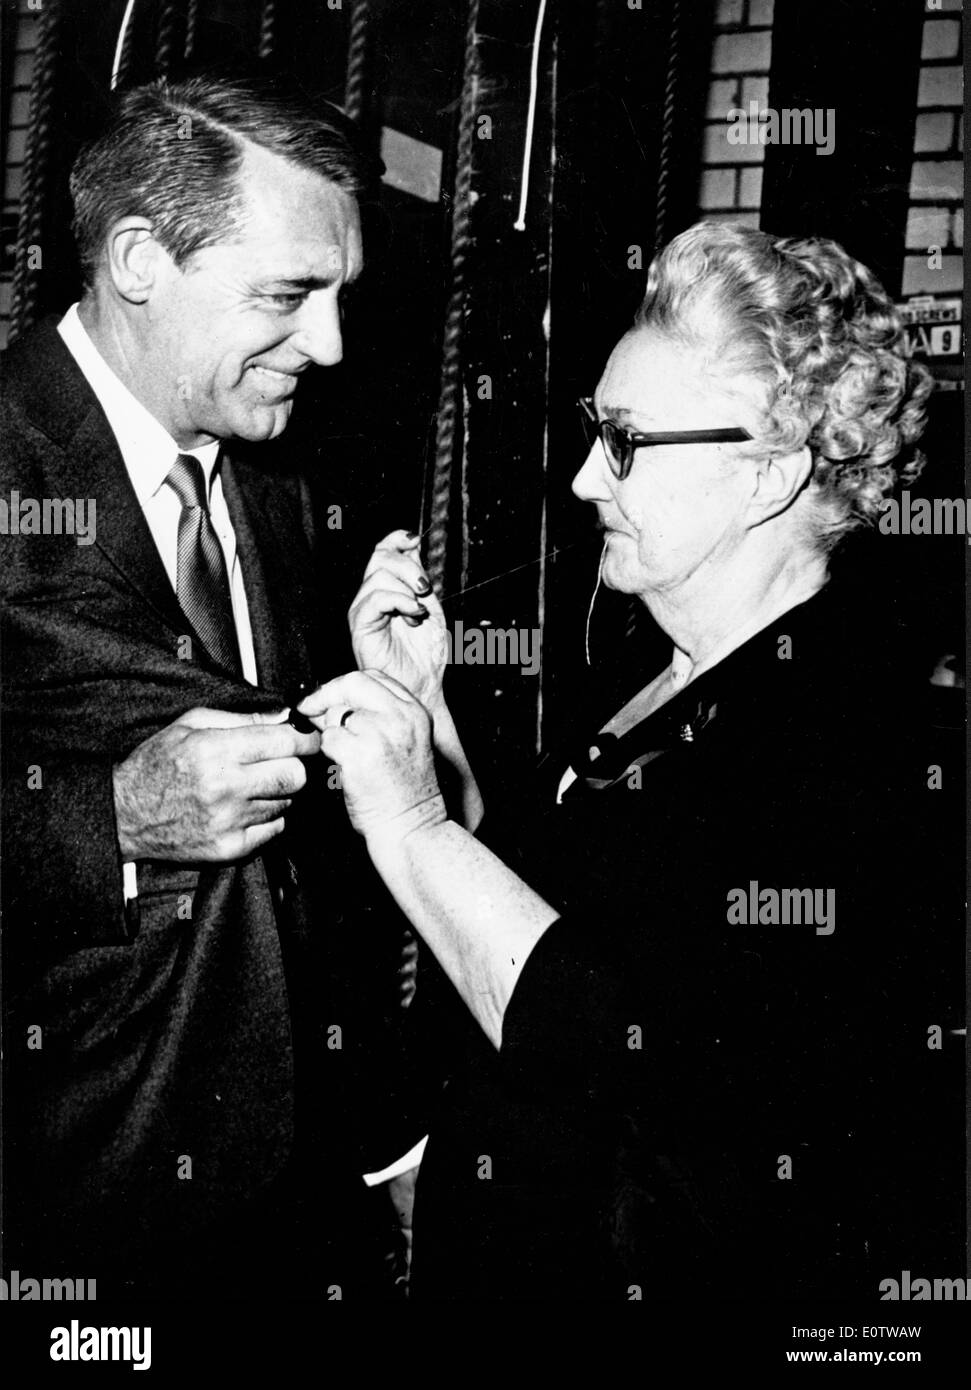 Acteur Cary Grant obtient un bouton cousu sur sa veste Banque D'Images